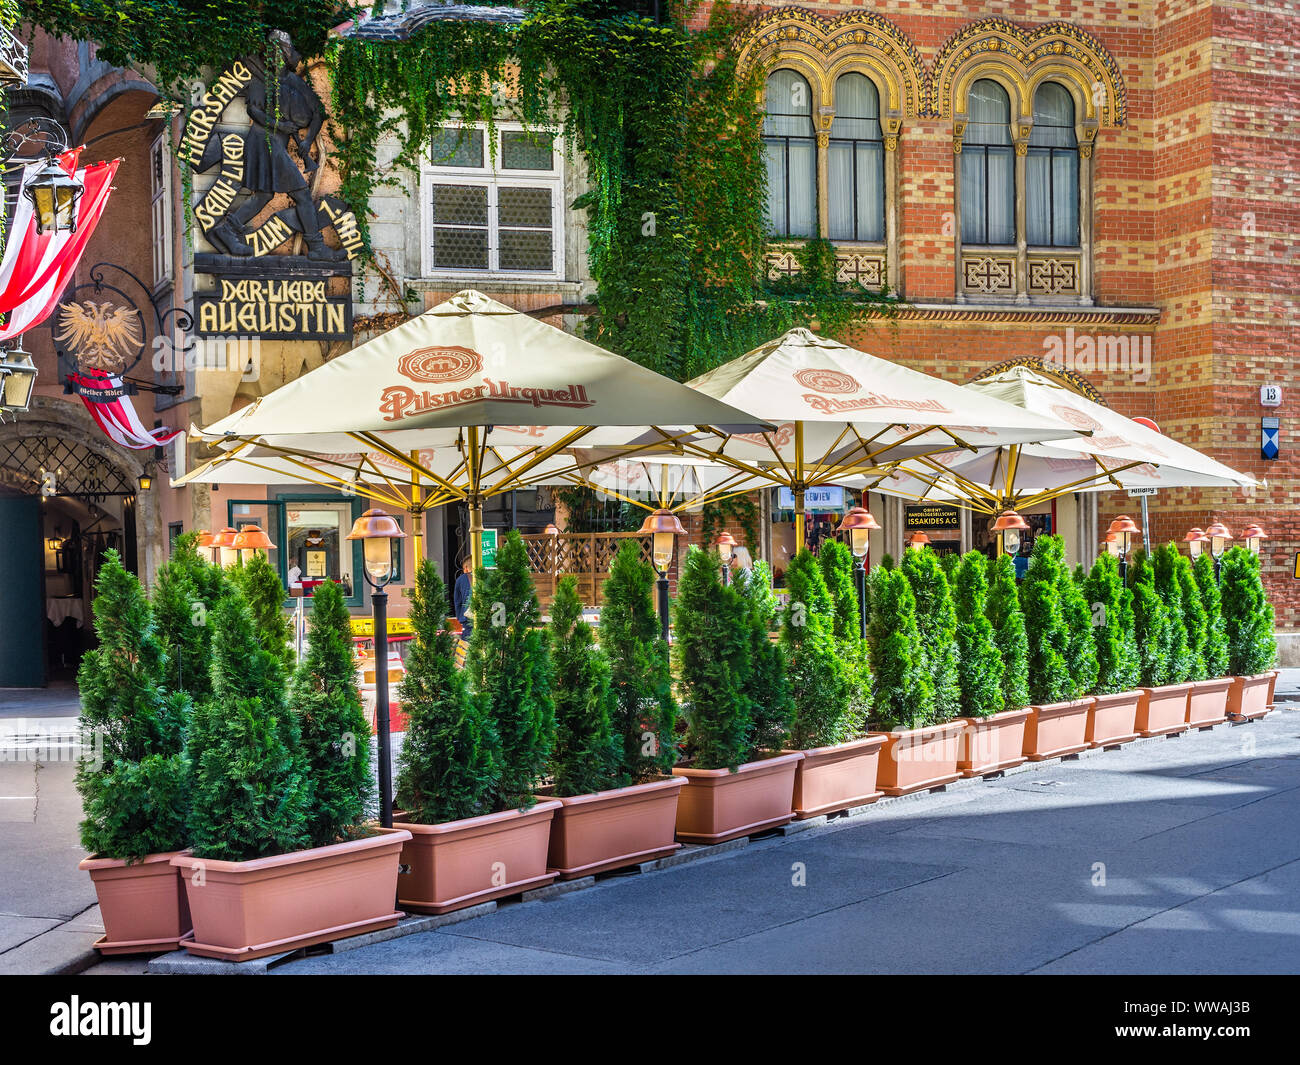 Planted evergreen shrubs outside 'Griechenbeisl' the oldest restaurant in Vienna, Austria. Stock Photo